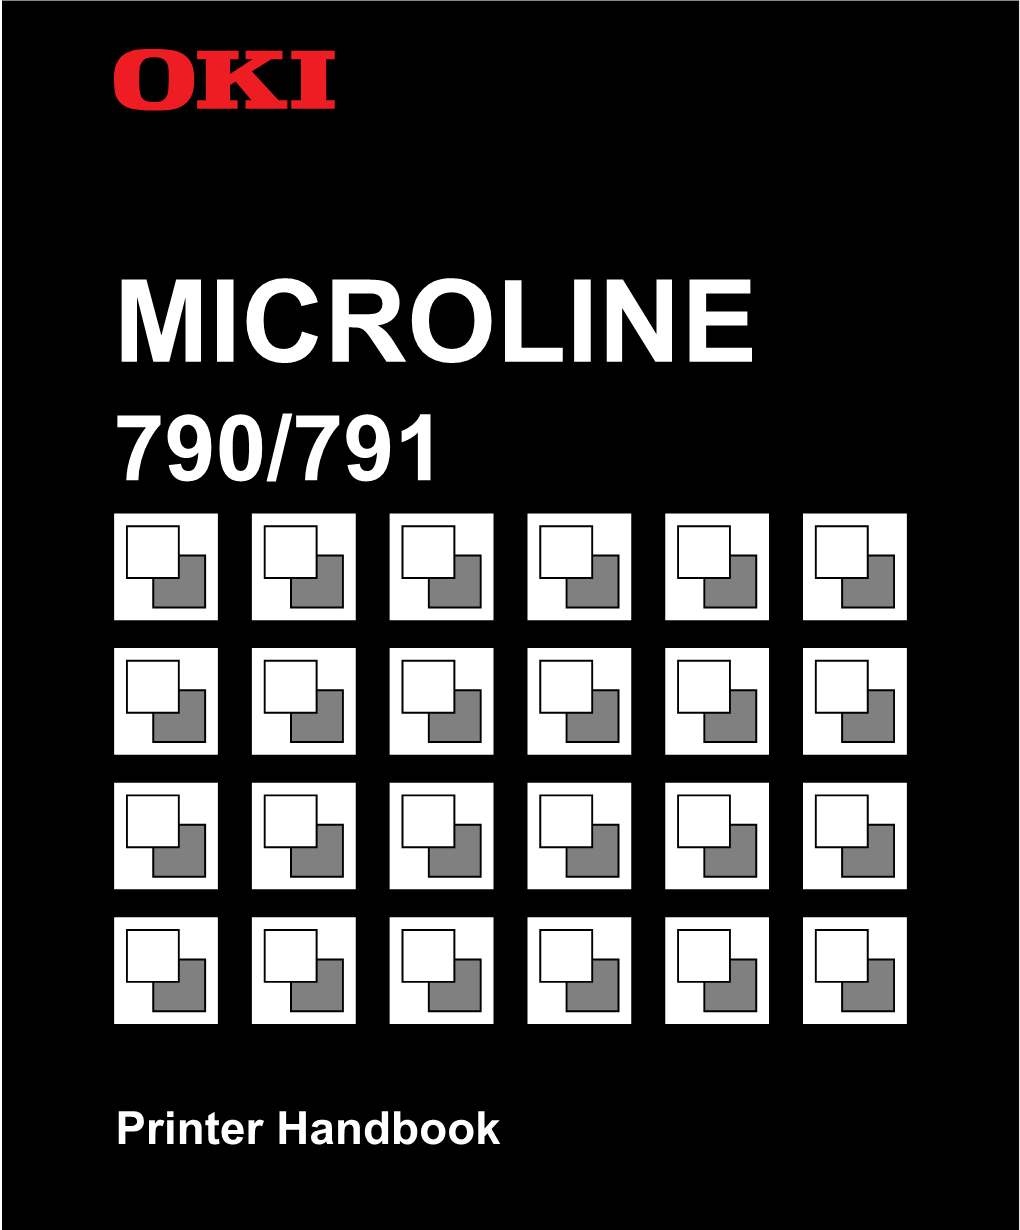 Microline 790/791